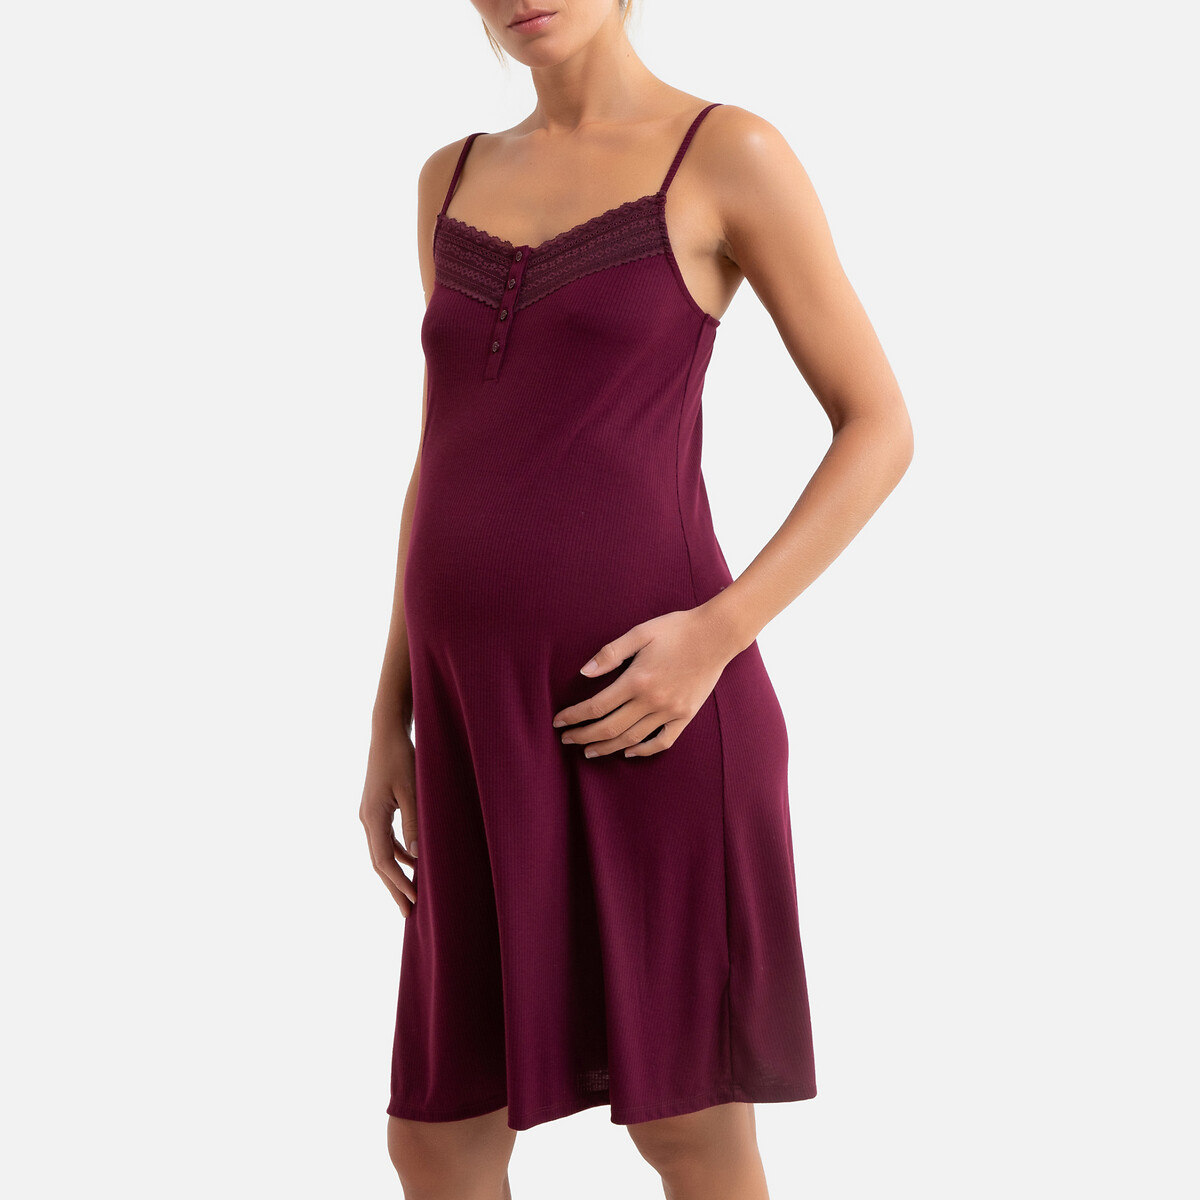 Сорочка La Redoute Ночная для беременных 38/40 (FR) - 44/46 (RUS) фиолетовый, размер 38/40 (FR) - 44/46 (RUS)